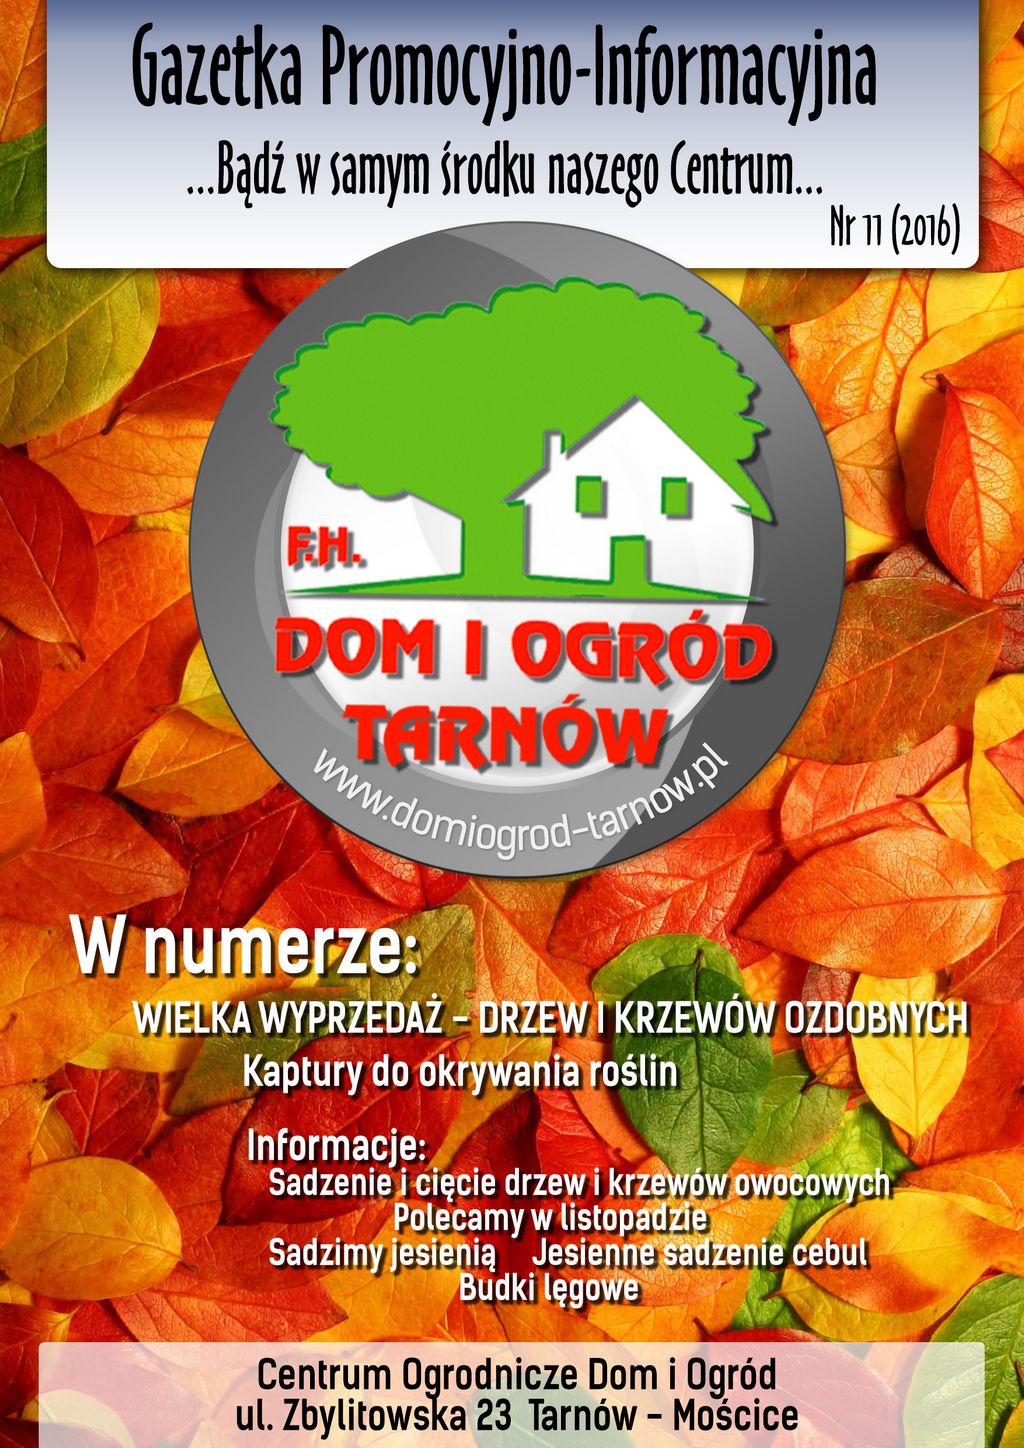 Gazetka Promocyjno-Informacyjna - 11/2016